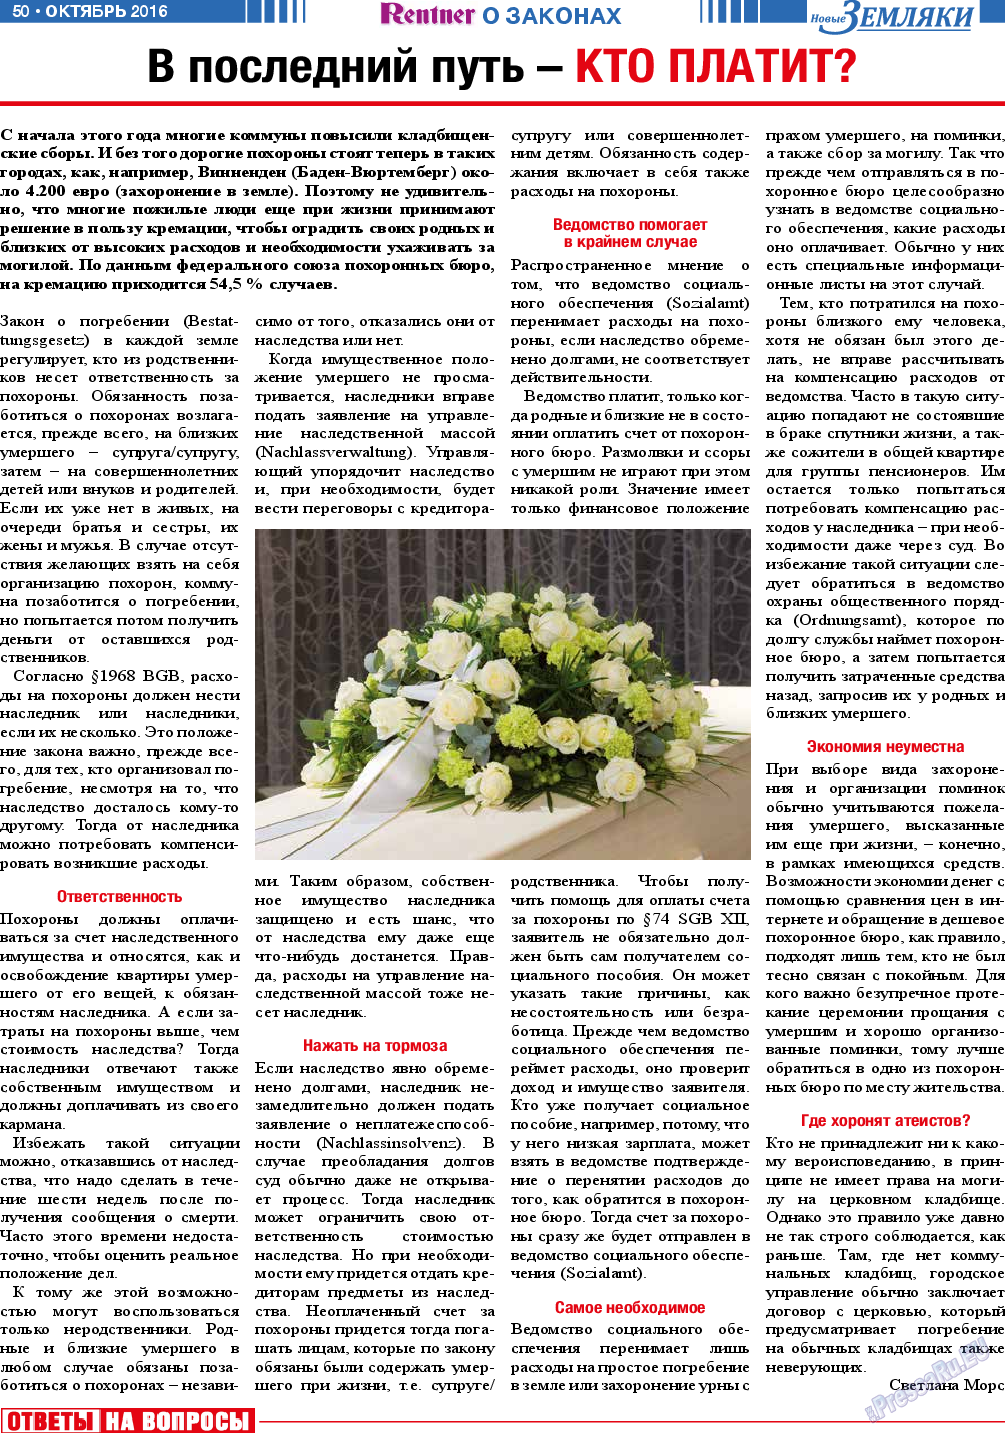 Новые Земляки, газета. 2016 №10 стр.50